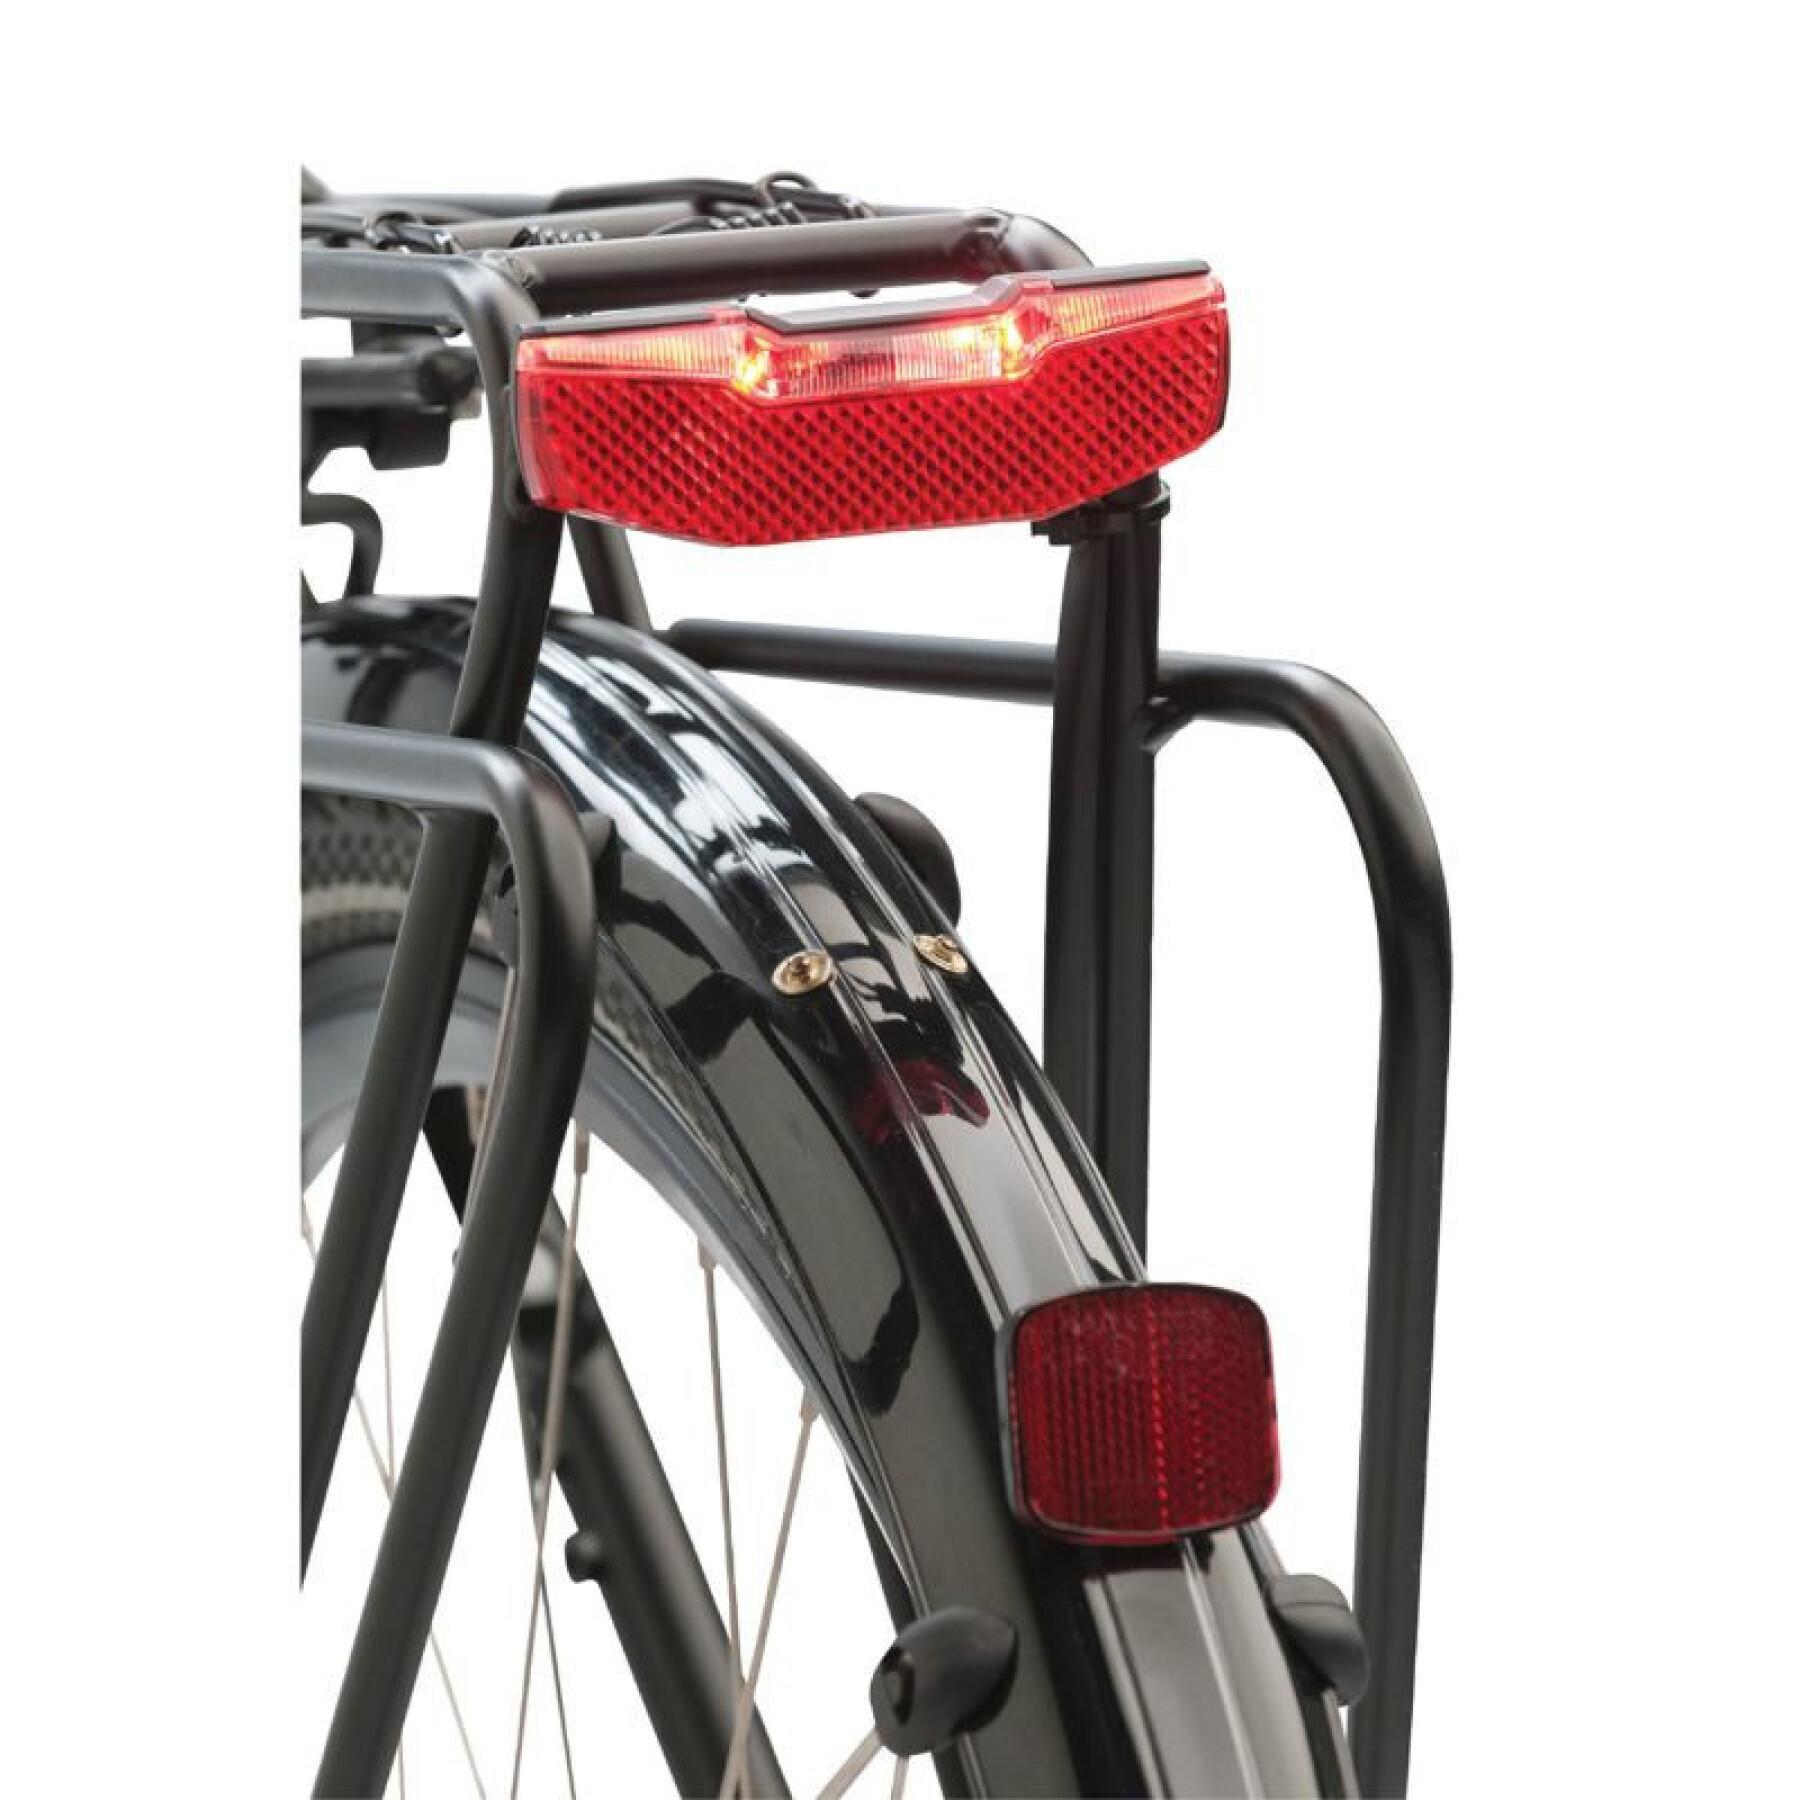 Éclairage vélo arrière sur porte-bagage compatible dynamo (éclairage à l'arrêt 4 minutes) - visible à 600 m Axa-Basta VAE Blueline 6V Steady E-Bike